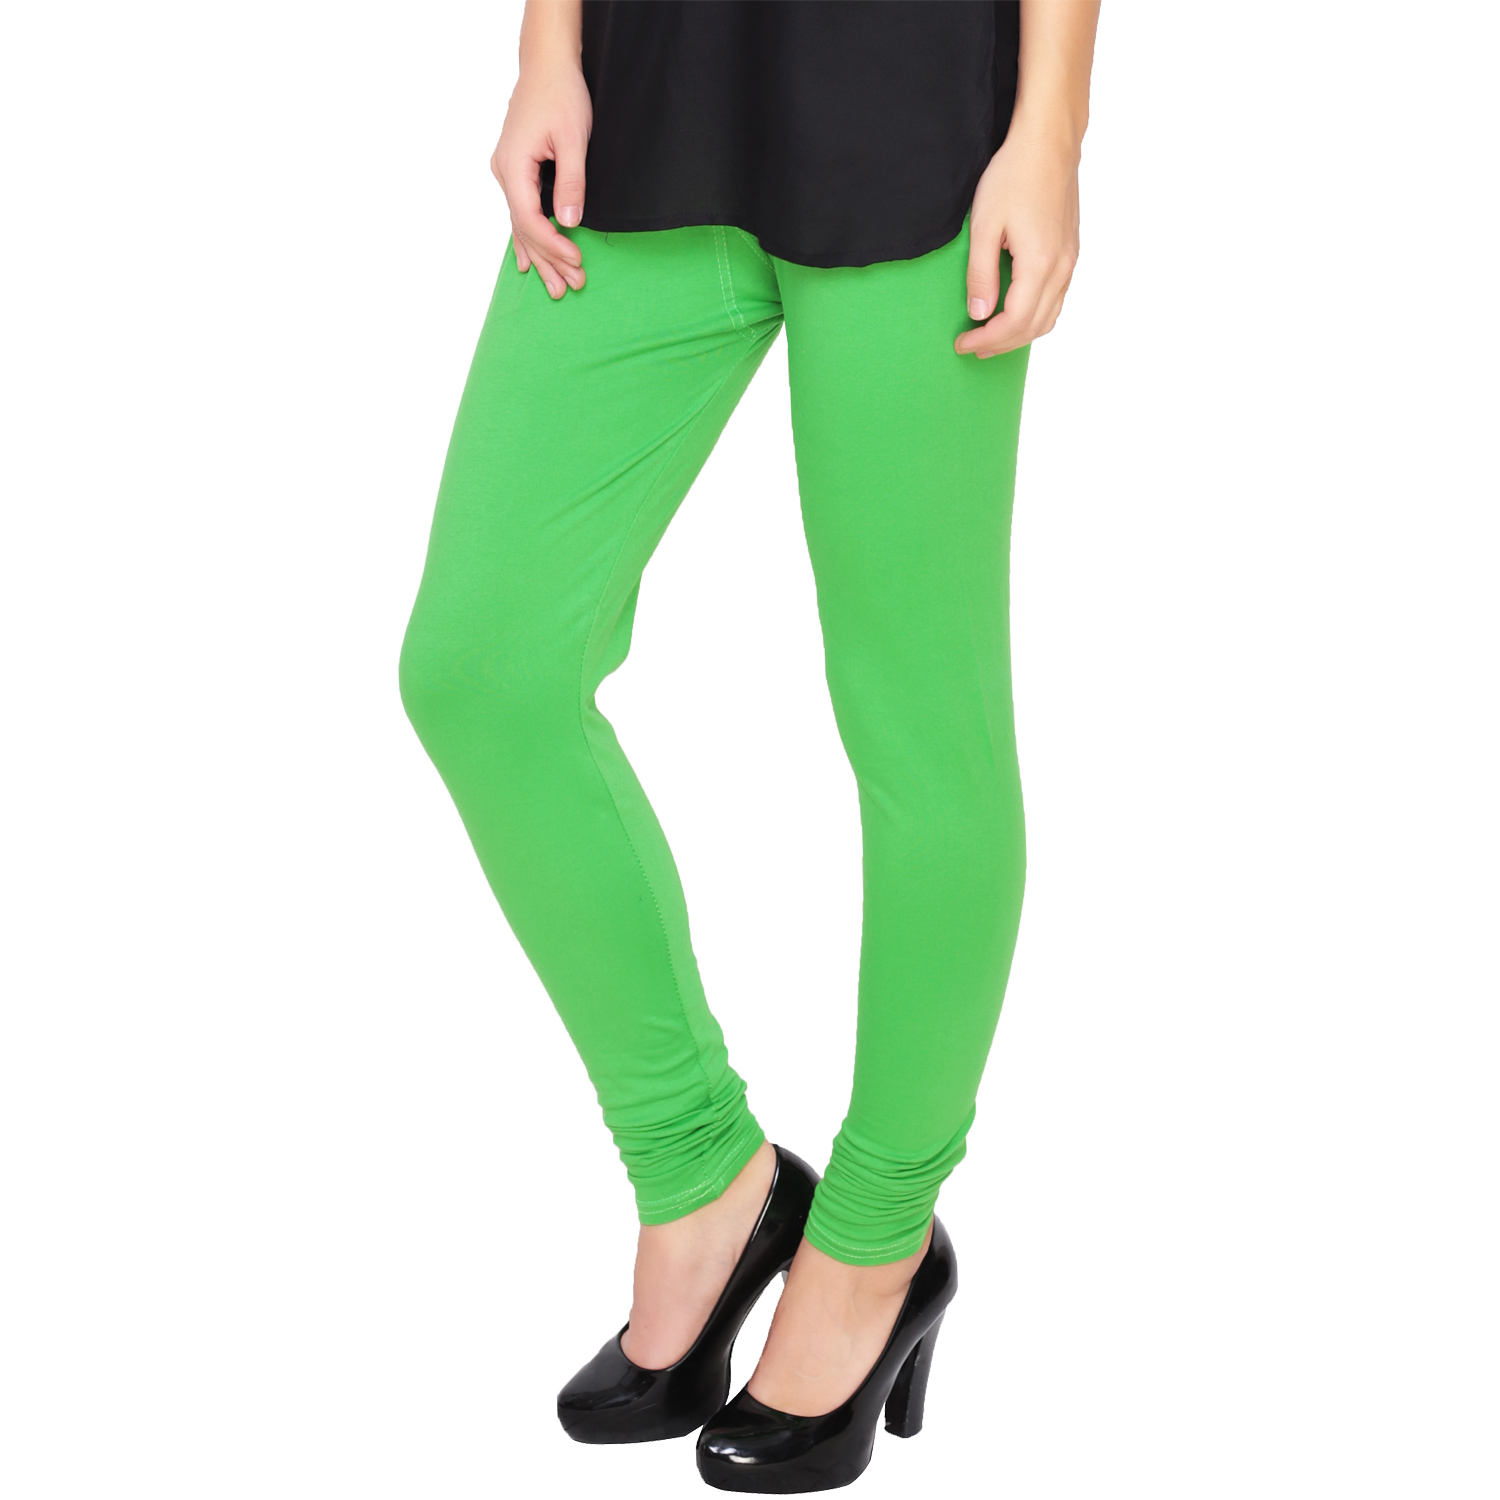 Buy Light Green Leggings Online @ ₹300 from ShopClues